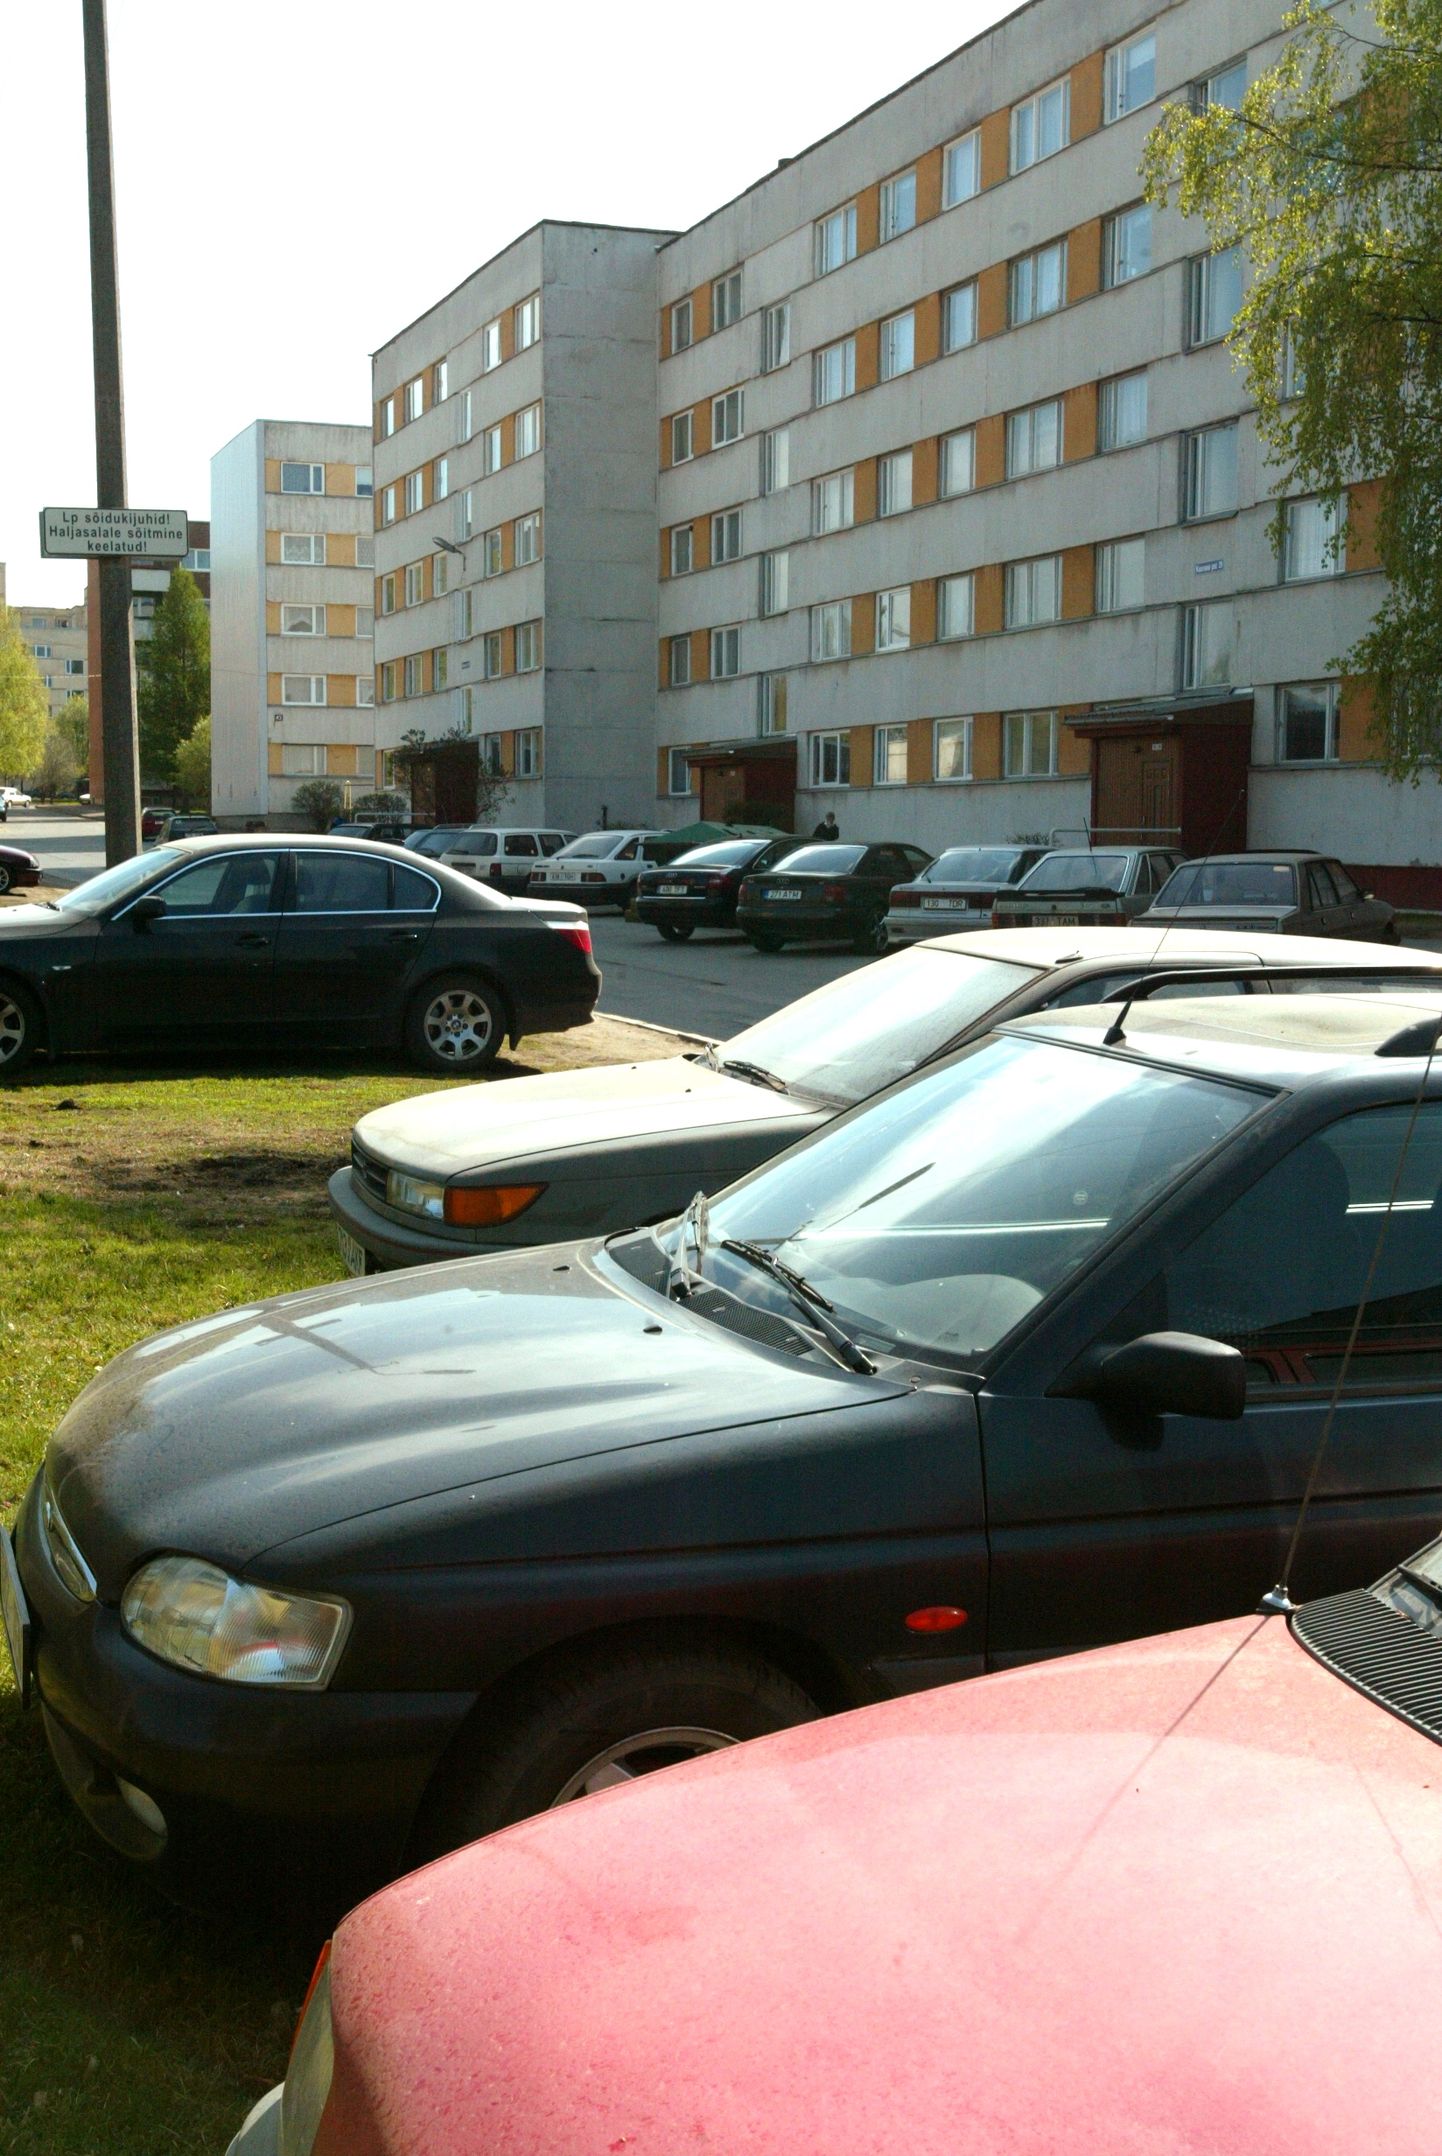 Eesti võiks parkimisprobleemide lahendamisel võtta eeskuju Euroopast.